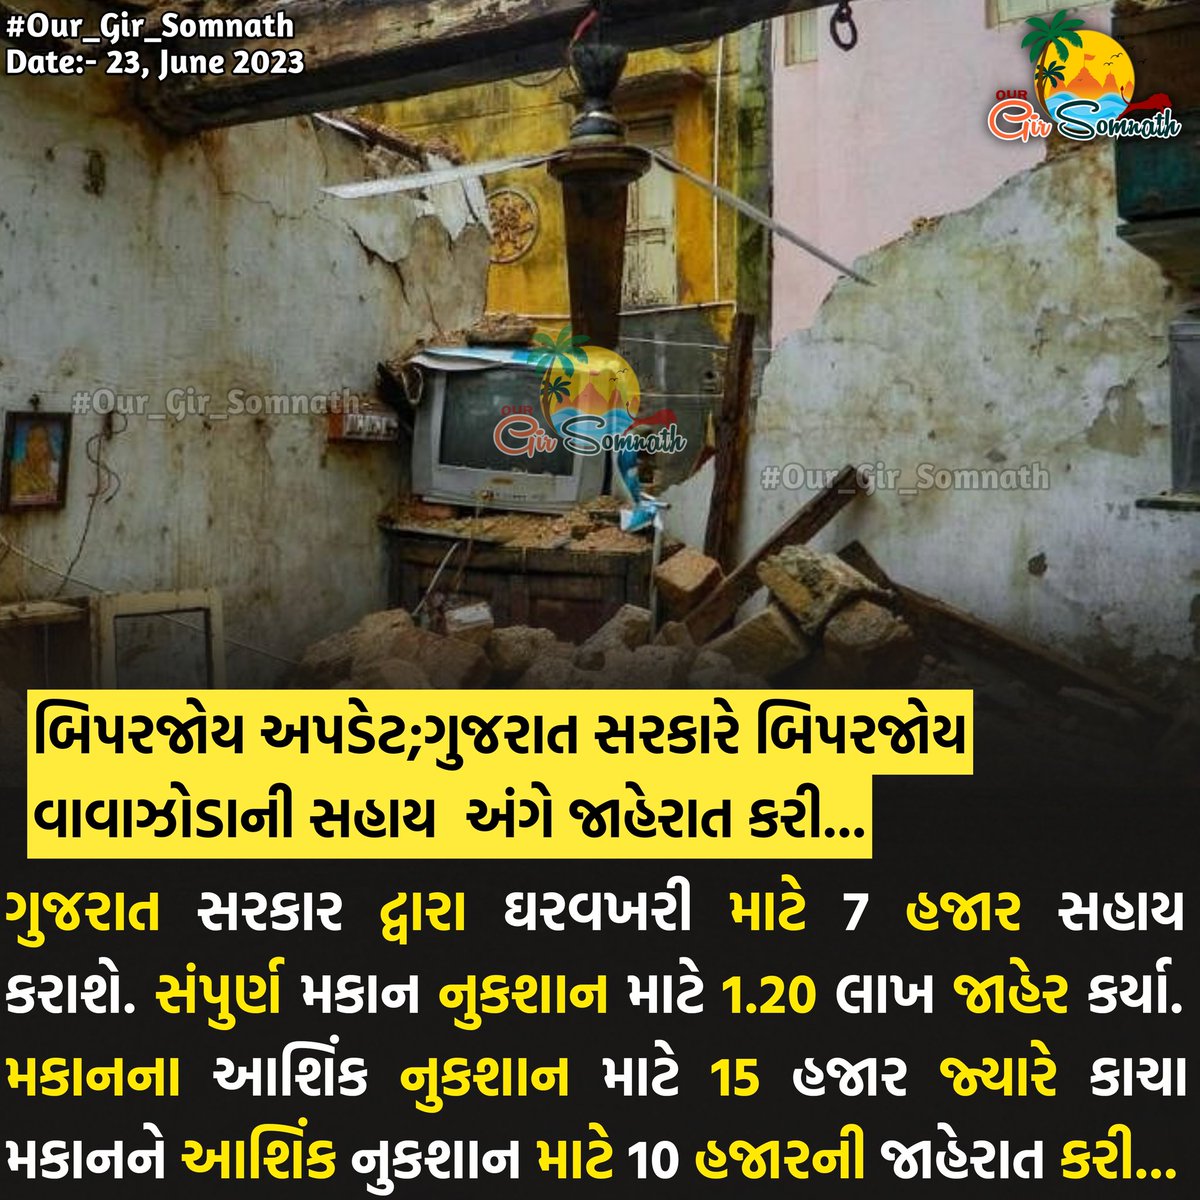 બિપરજોય અપડેટ;ગુજરાત સરકારે બિપરજોય વાવાઝોડાની સહાય  અંગે જાહેરાત કરી...

#our_gir_somnath #our_amdavad_city #Biporjoy #biporjoycyclonenews #Gujaratcyclone